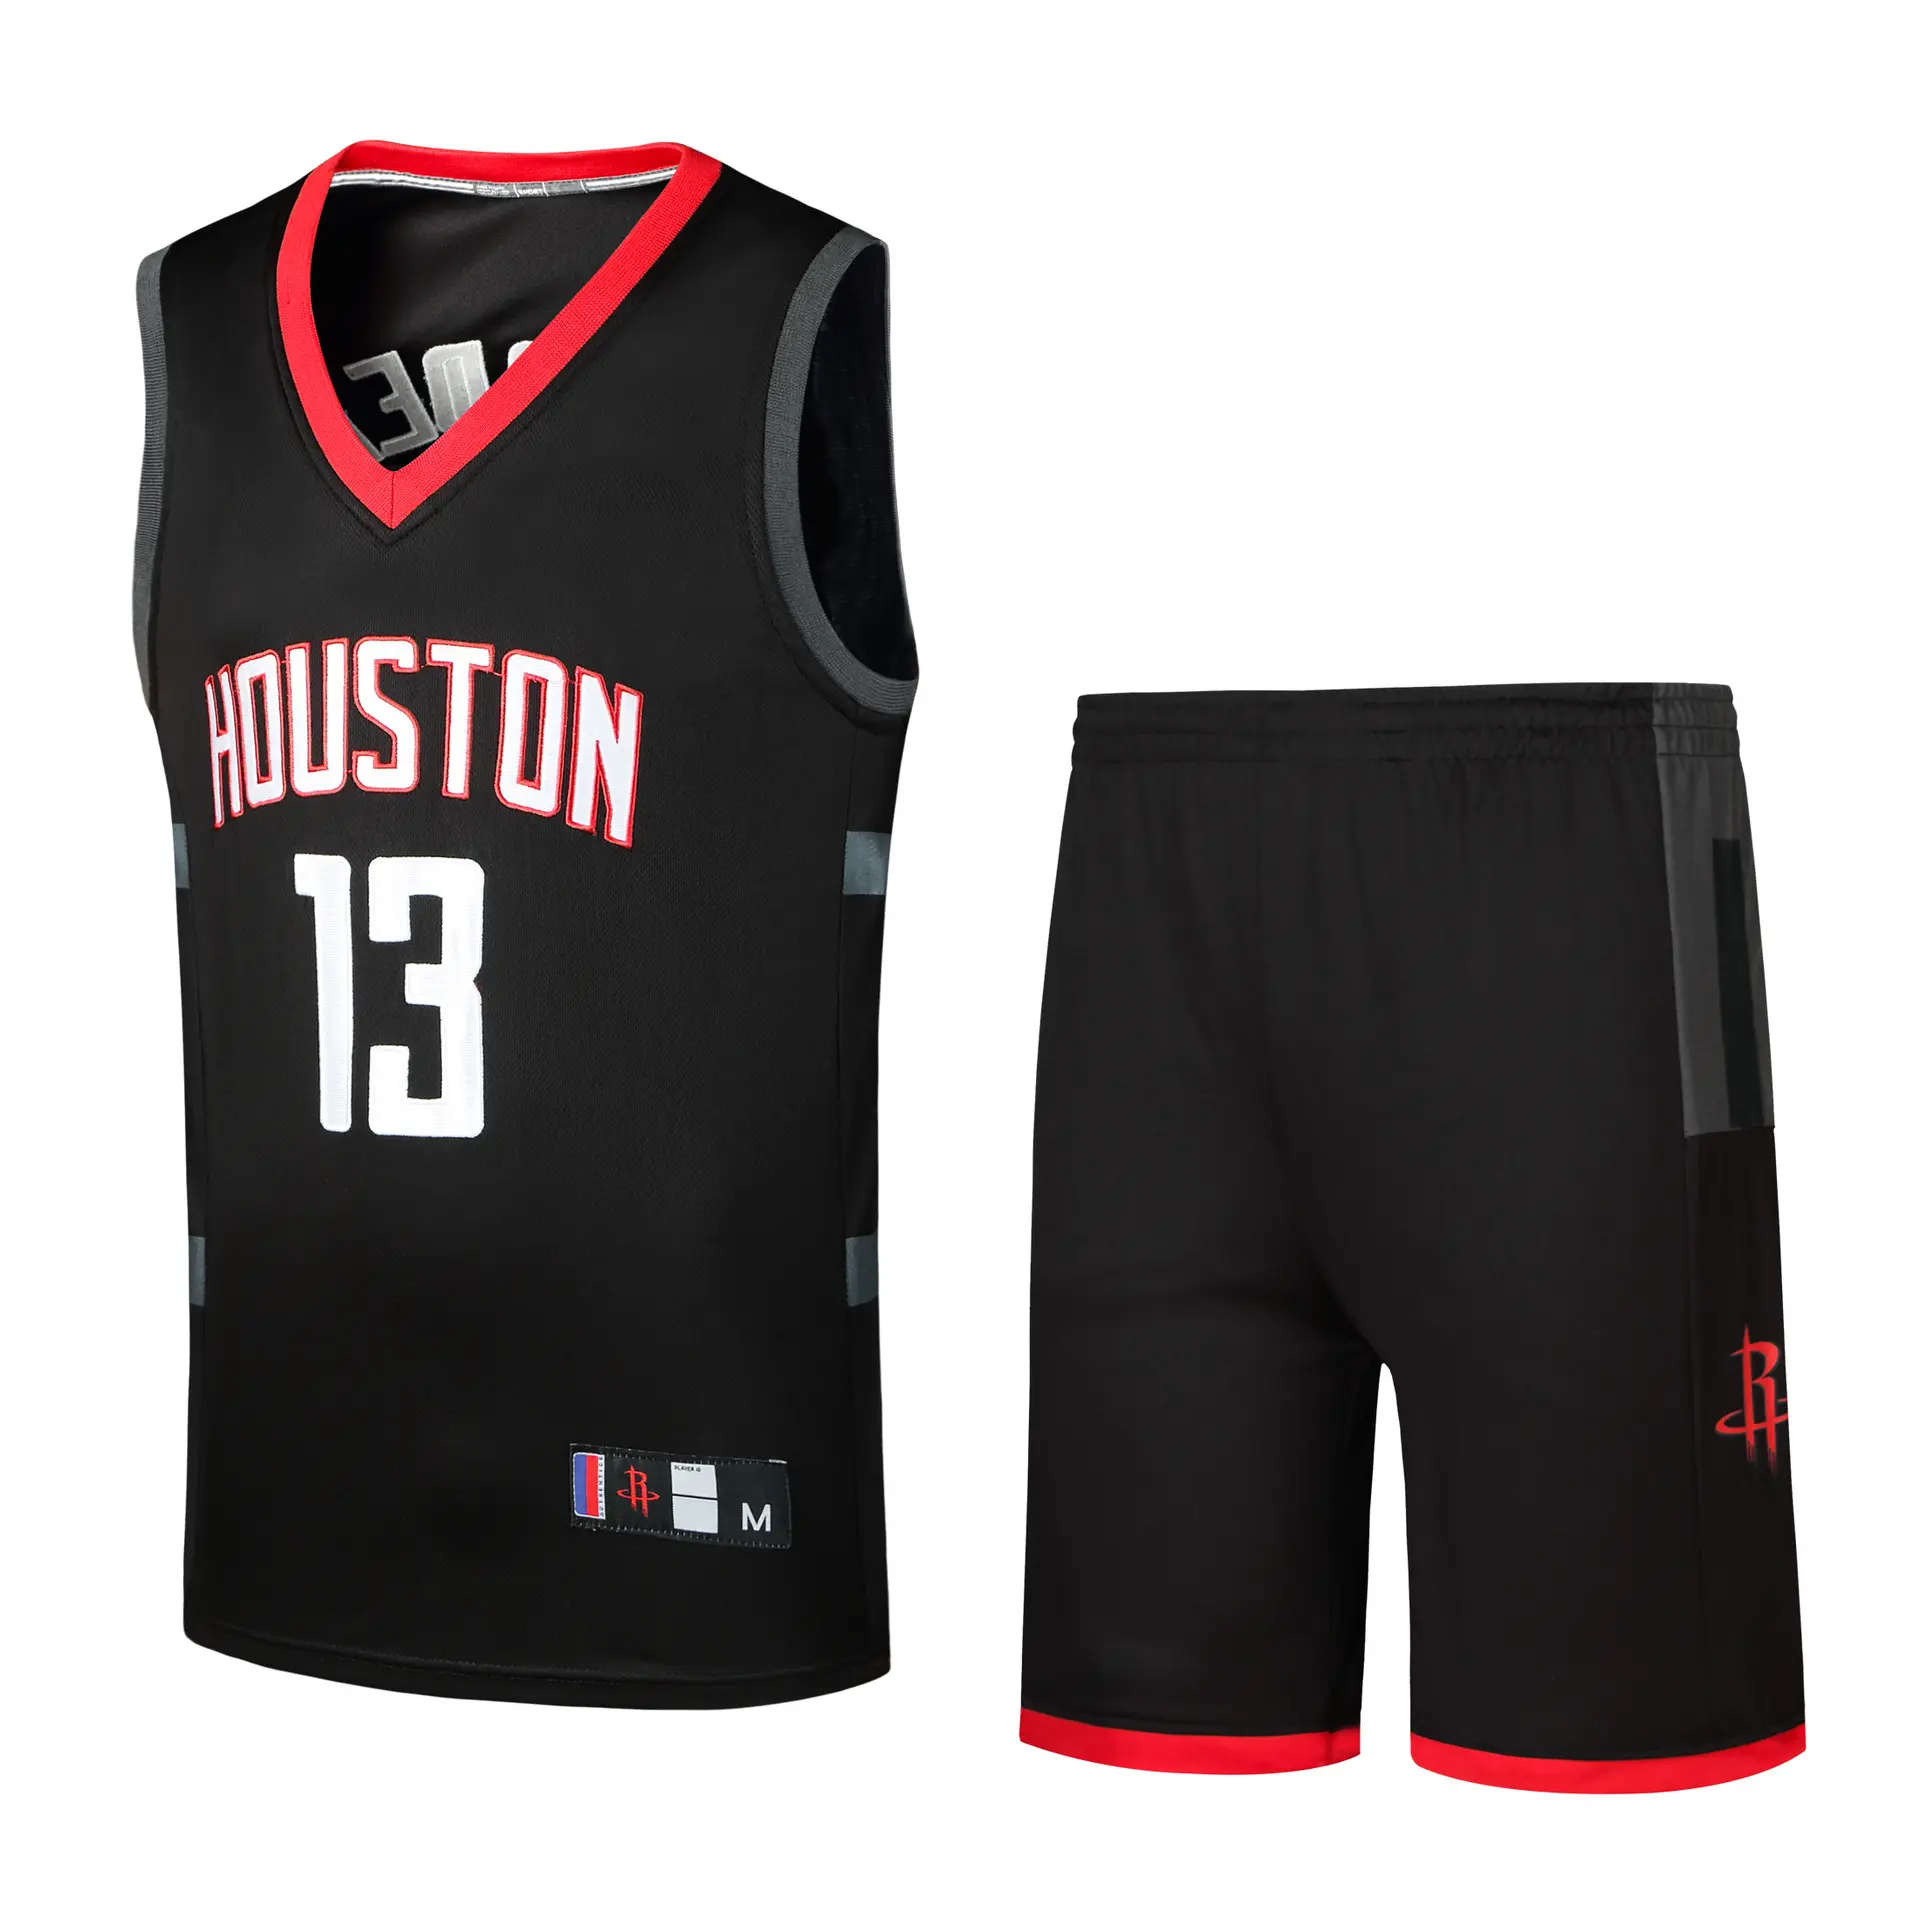 Uniforme de baloncesto personalizado, camiseta de malla Reversible de alta calidad, diseño barato, venta al por mayor